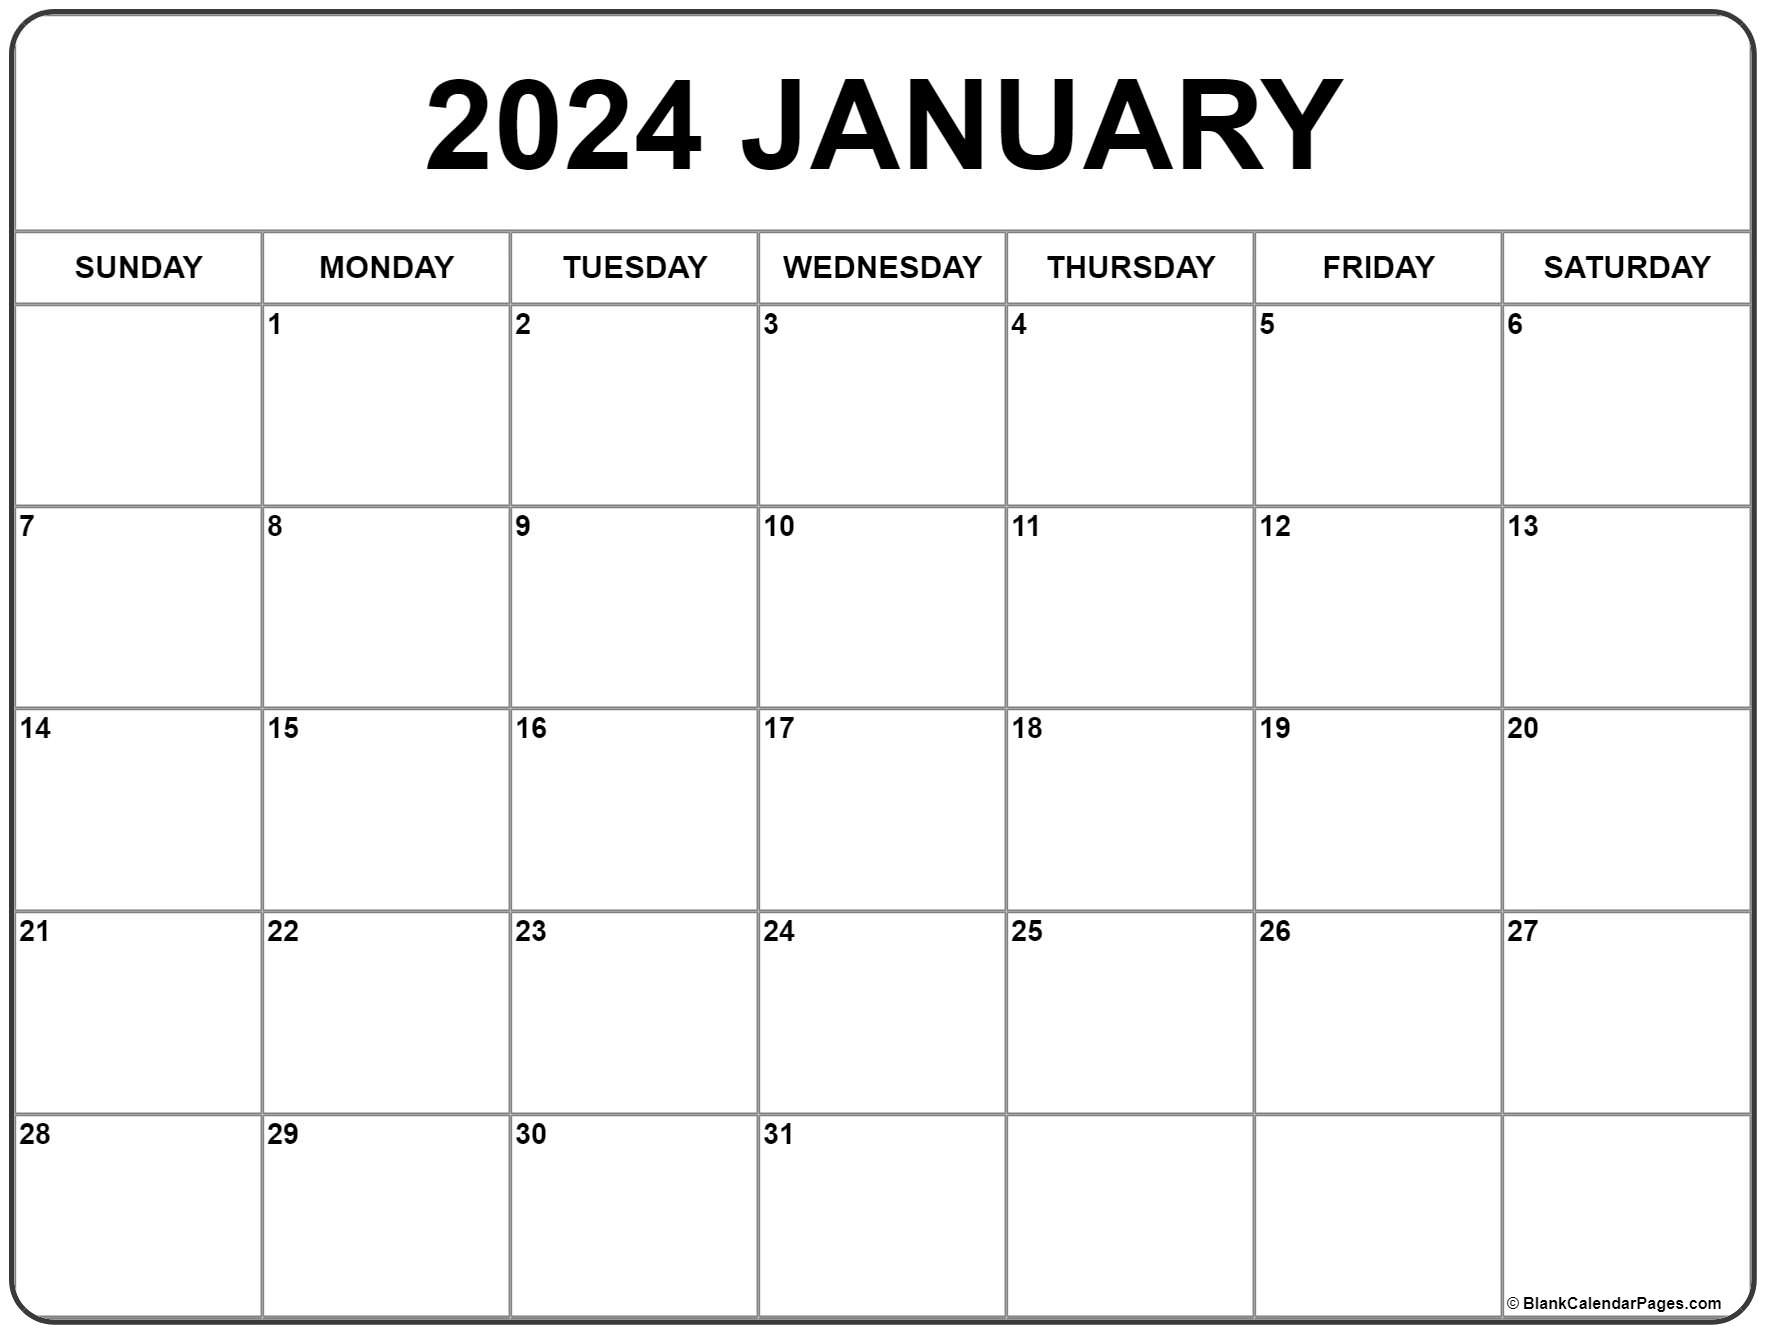 January 2024 Calendar | Free Printable Calendar for A-Printable-Calendar January 2024